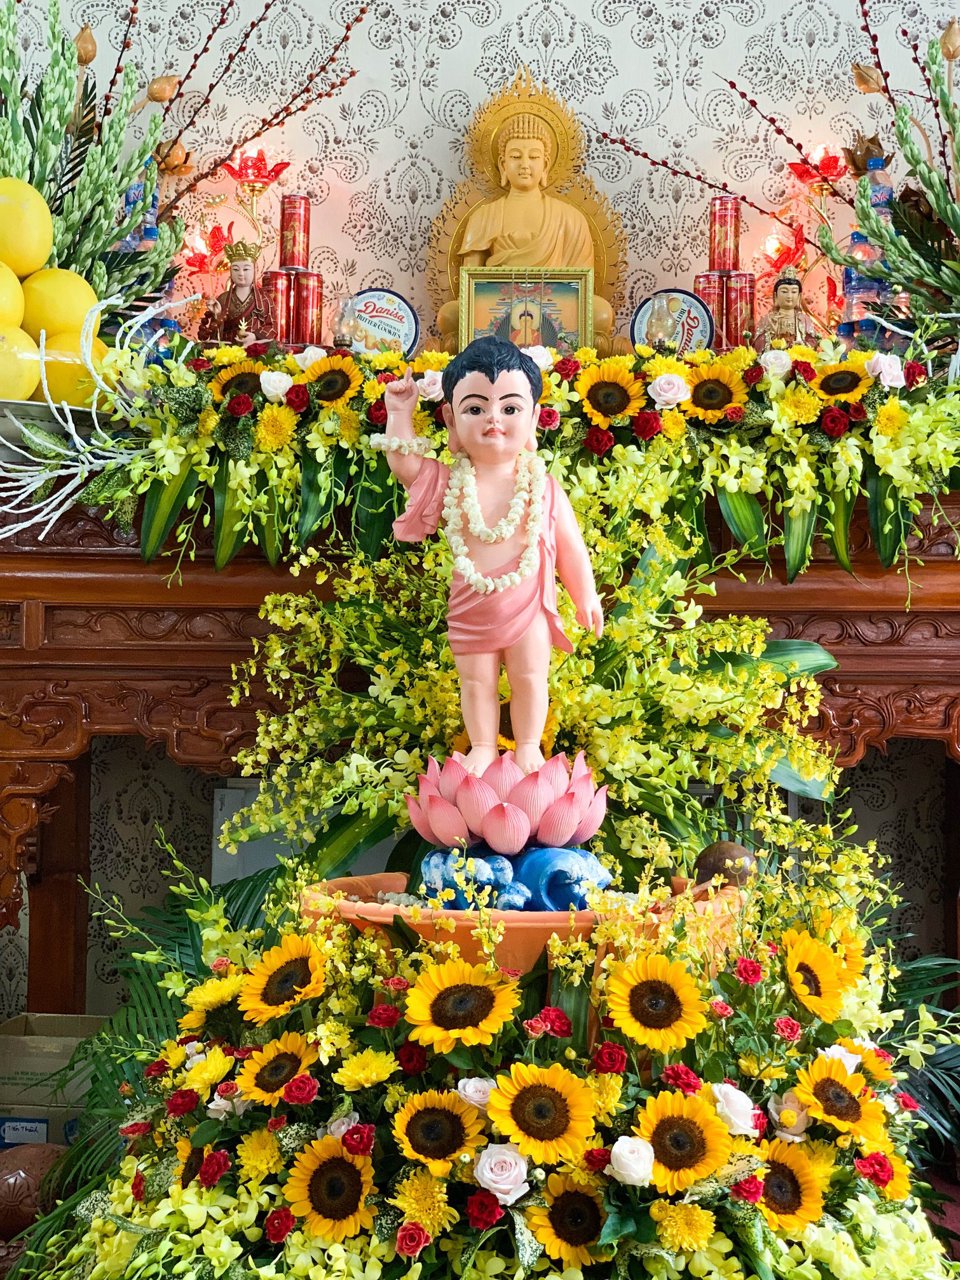 Lễ tắm Phật được phục dựng nhằm t&aacute;i hiện khung cảnh trang nghi&ecirc;m, mầu nhiệm khi đức Phật ch&agrave;o đời.